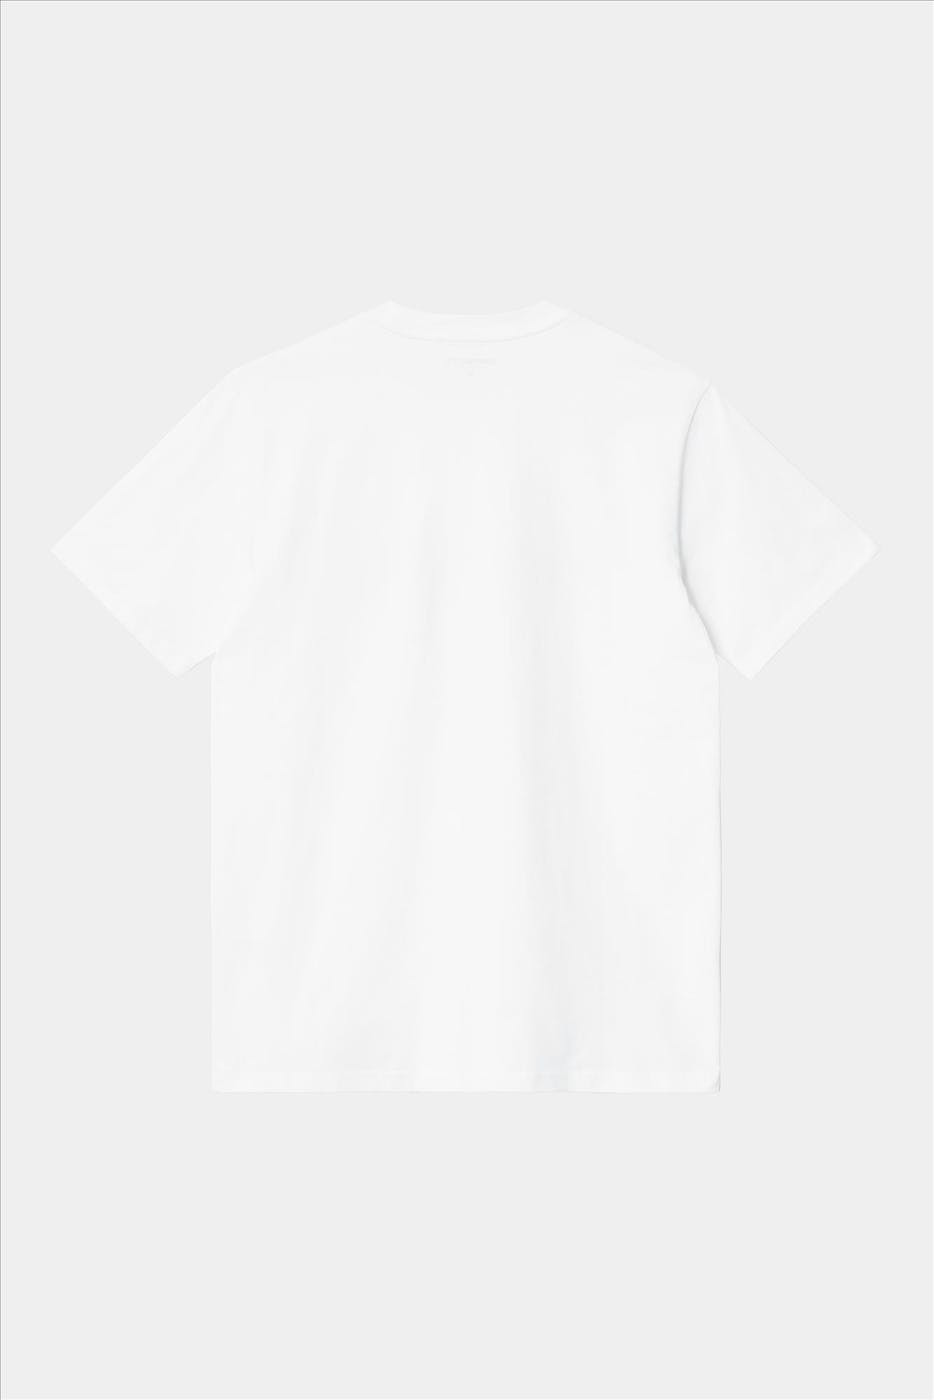 Carhartt WIP - Witte Script LogoT-shirt